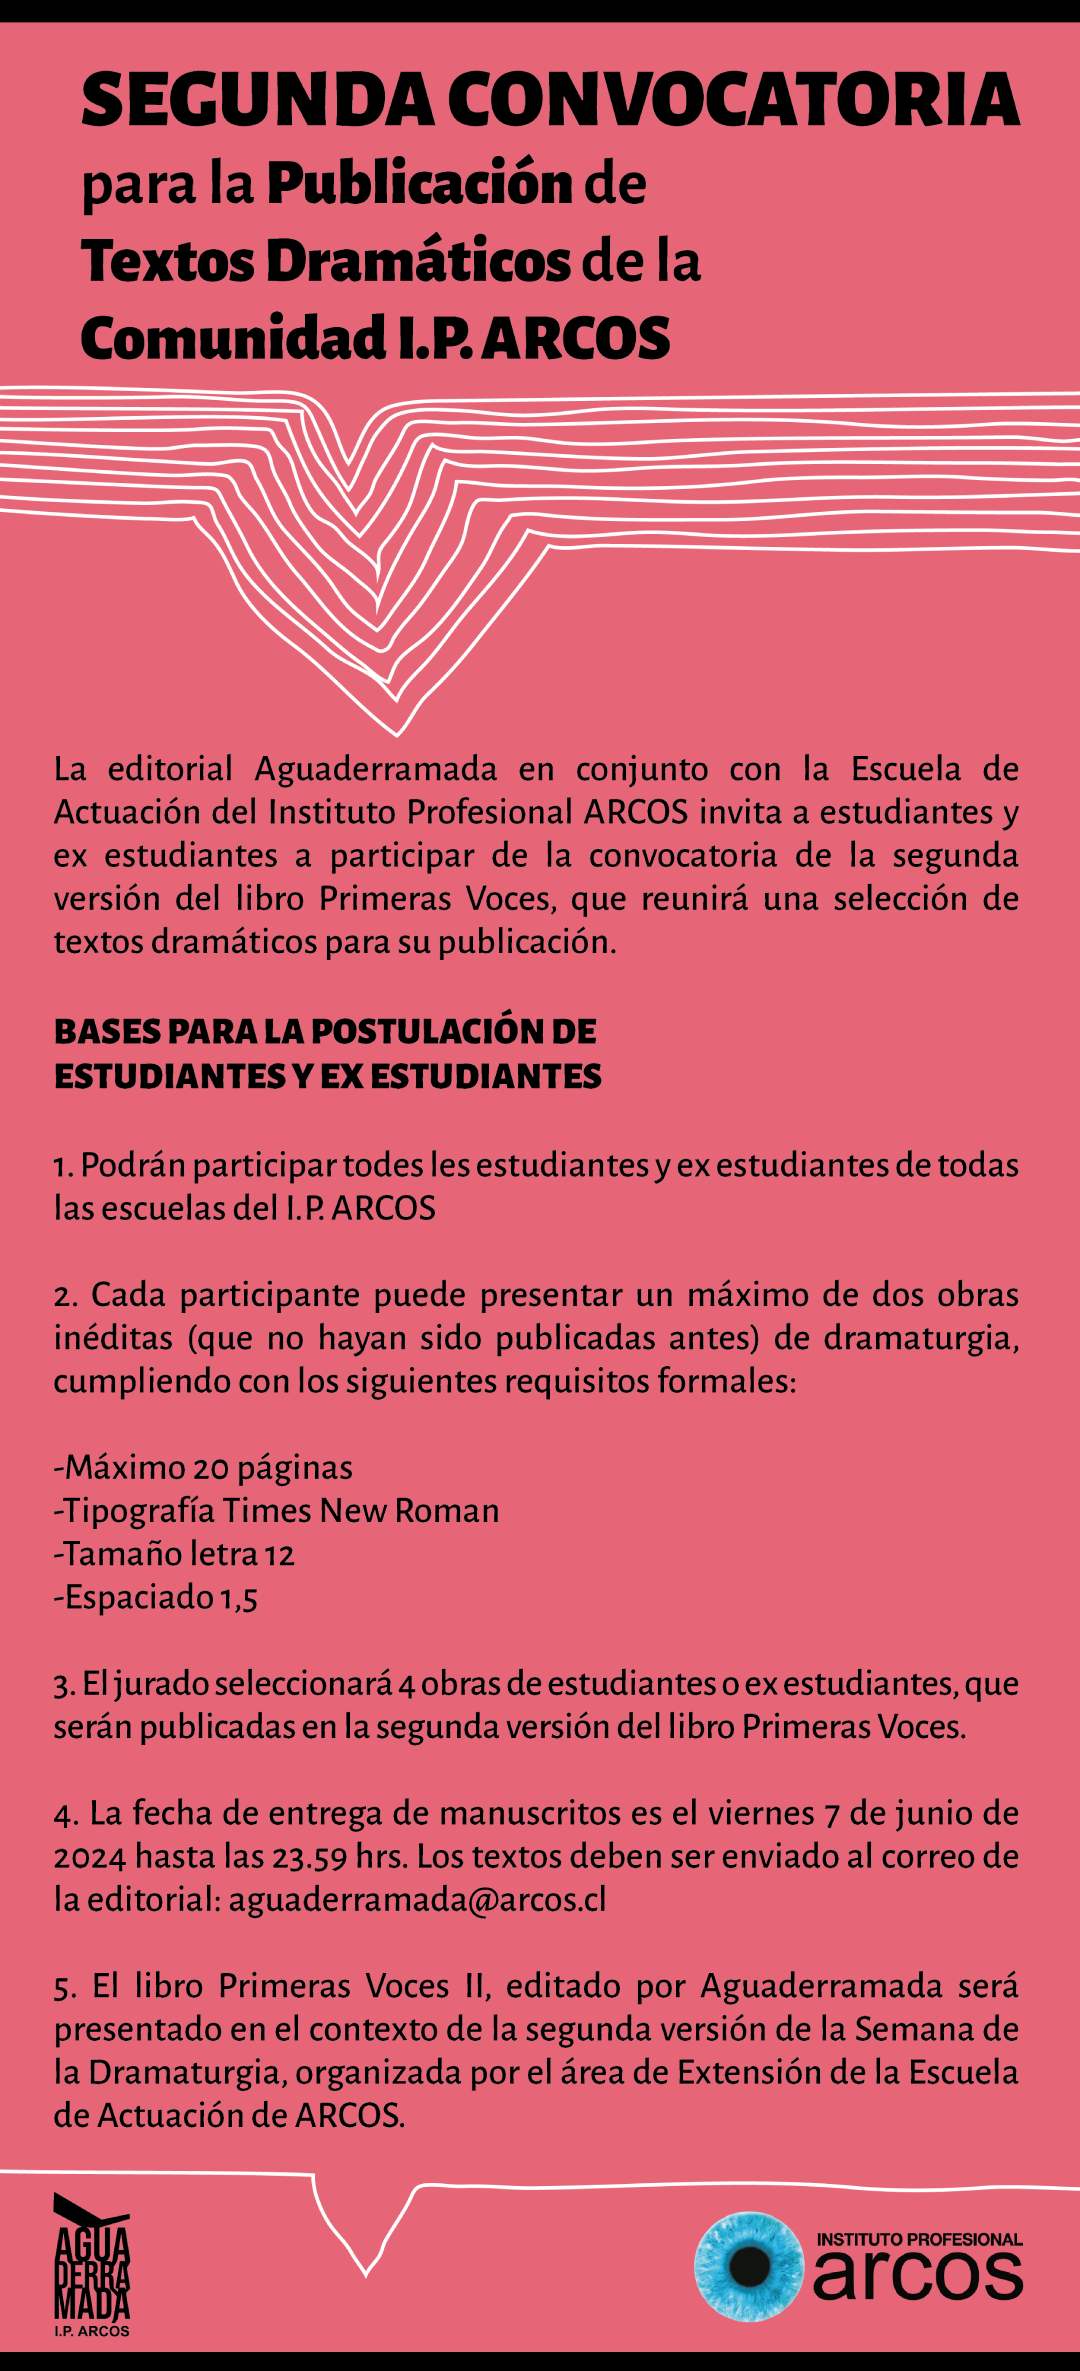 Afiche segunda convocatoria para la publicación de textos dramáticos de la comunidad I.P. ARCOS de la editorial Aguaderramada